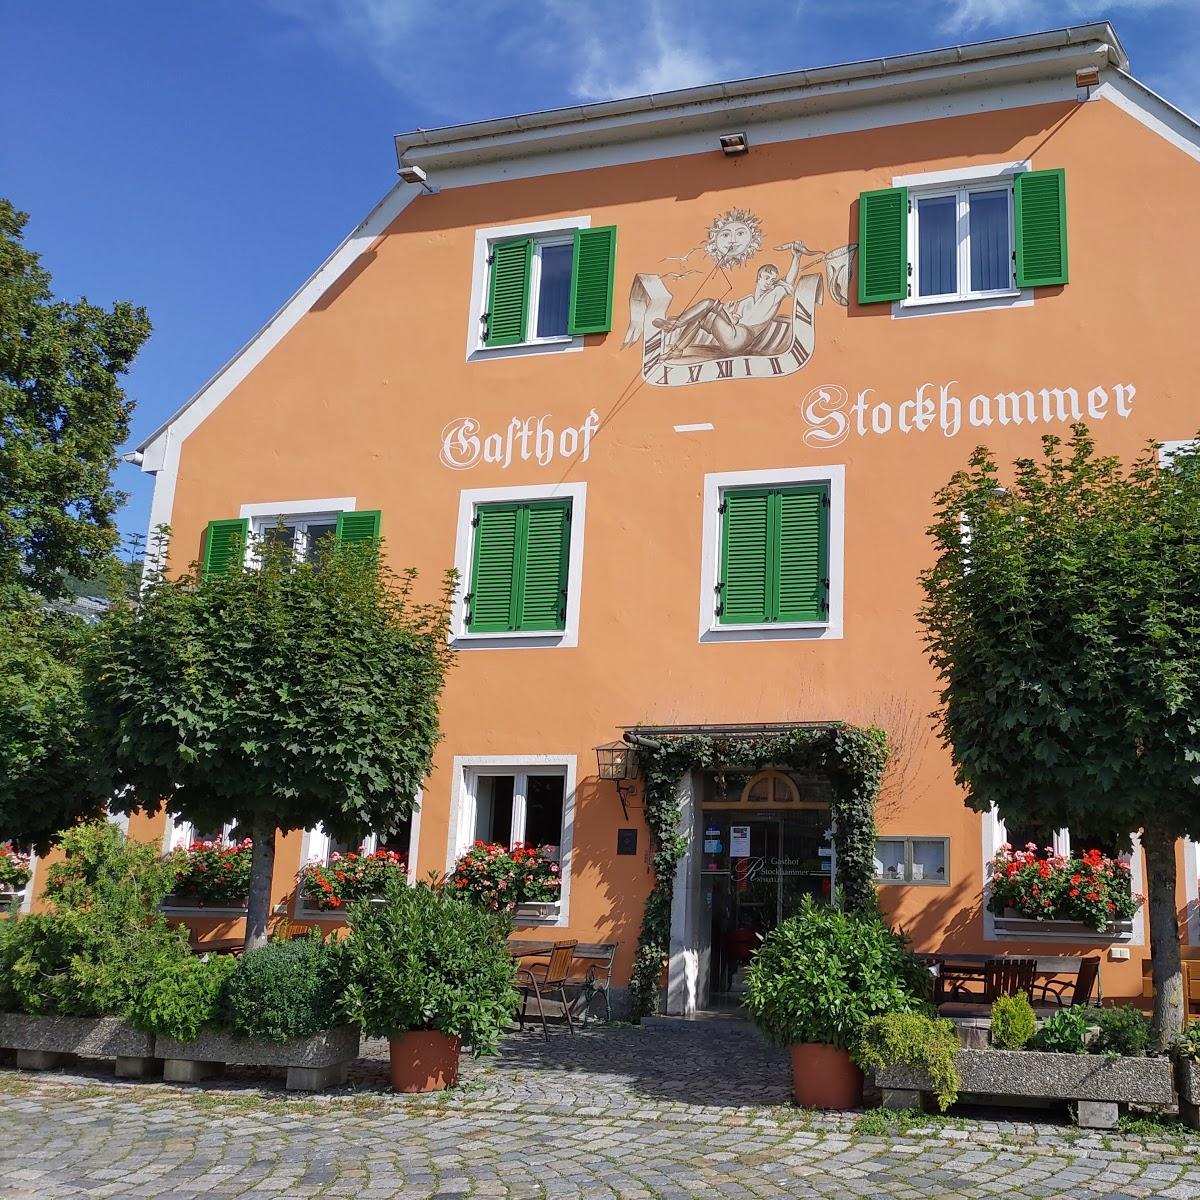 Restaurant "Gasthof Stockhammer" in  Kelheim